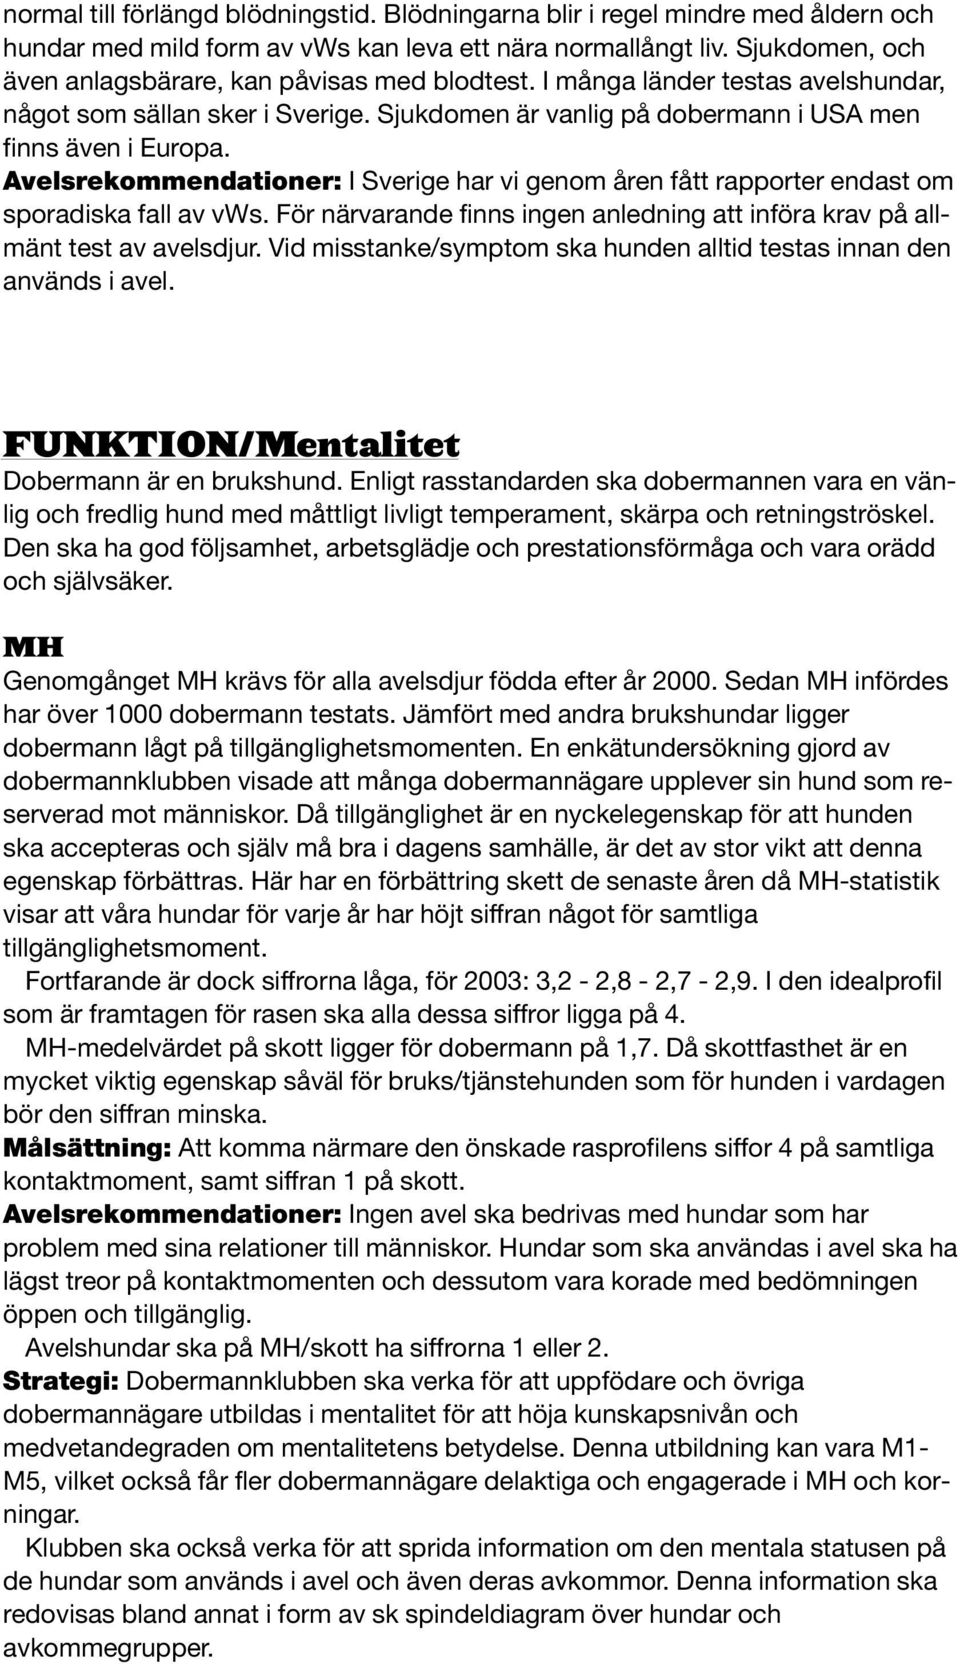 Avelsrekommendationer: I Sverige har vi genom åren fått rapporter endast om sporadiska fall av vws. För närvarande finns ingen anledning att införa krav på allmänt test av avelsdjur.